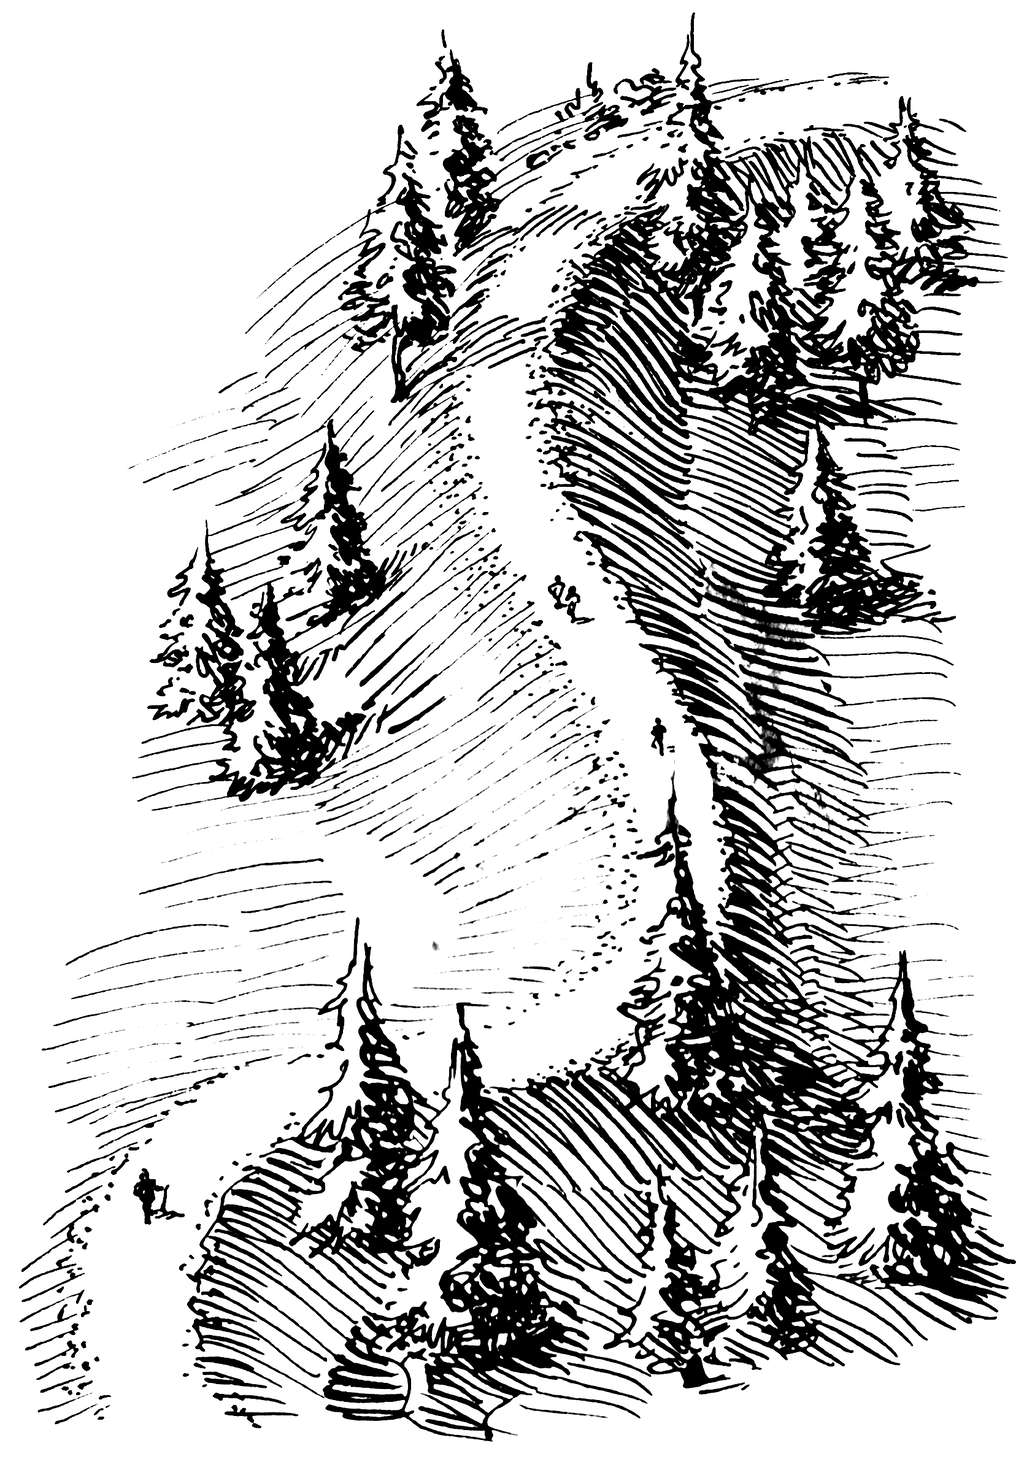 Chemin piéton au sommet d'un esker © Pearson Scott Foresman, <em>Wikimedia Commons</em>, domaine public